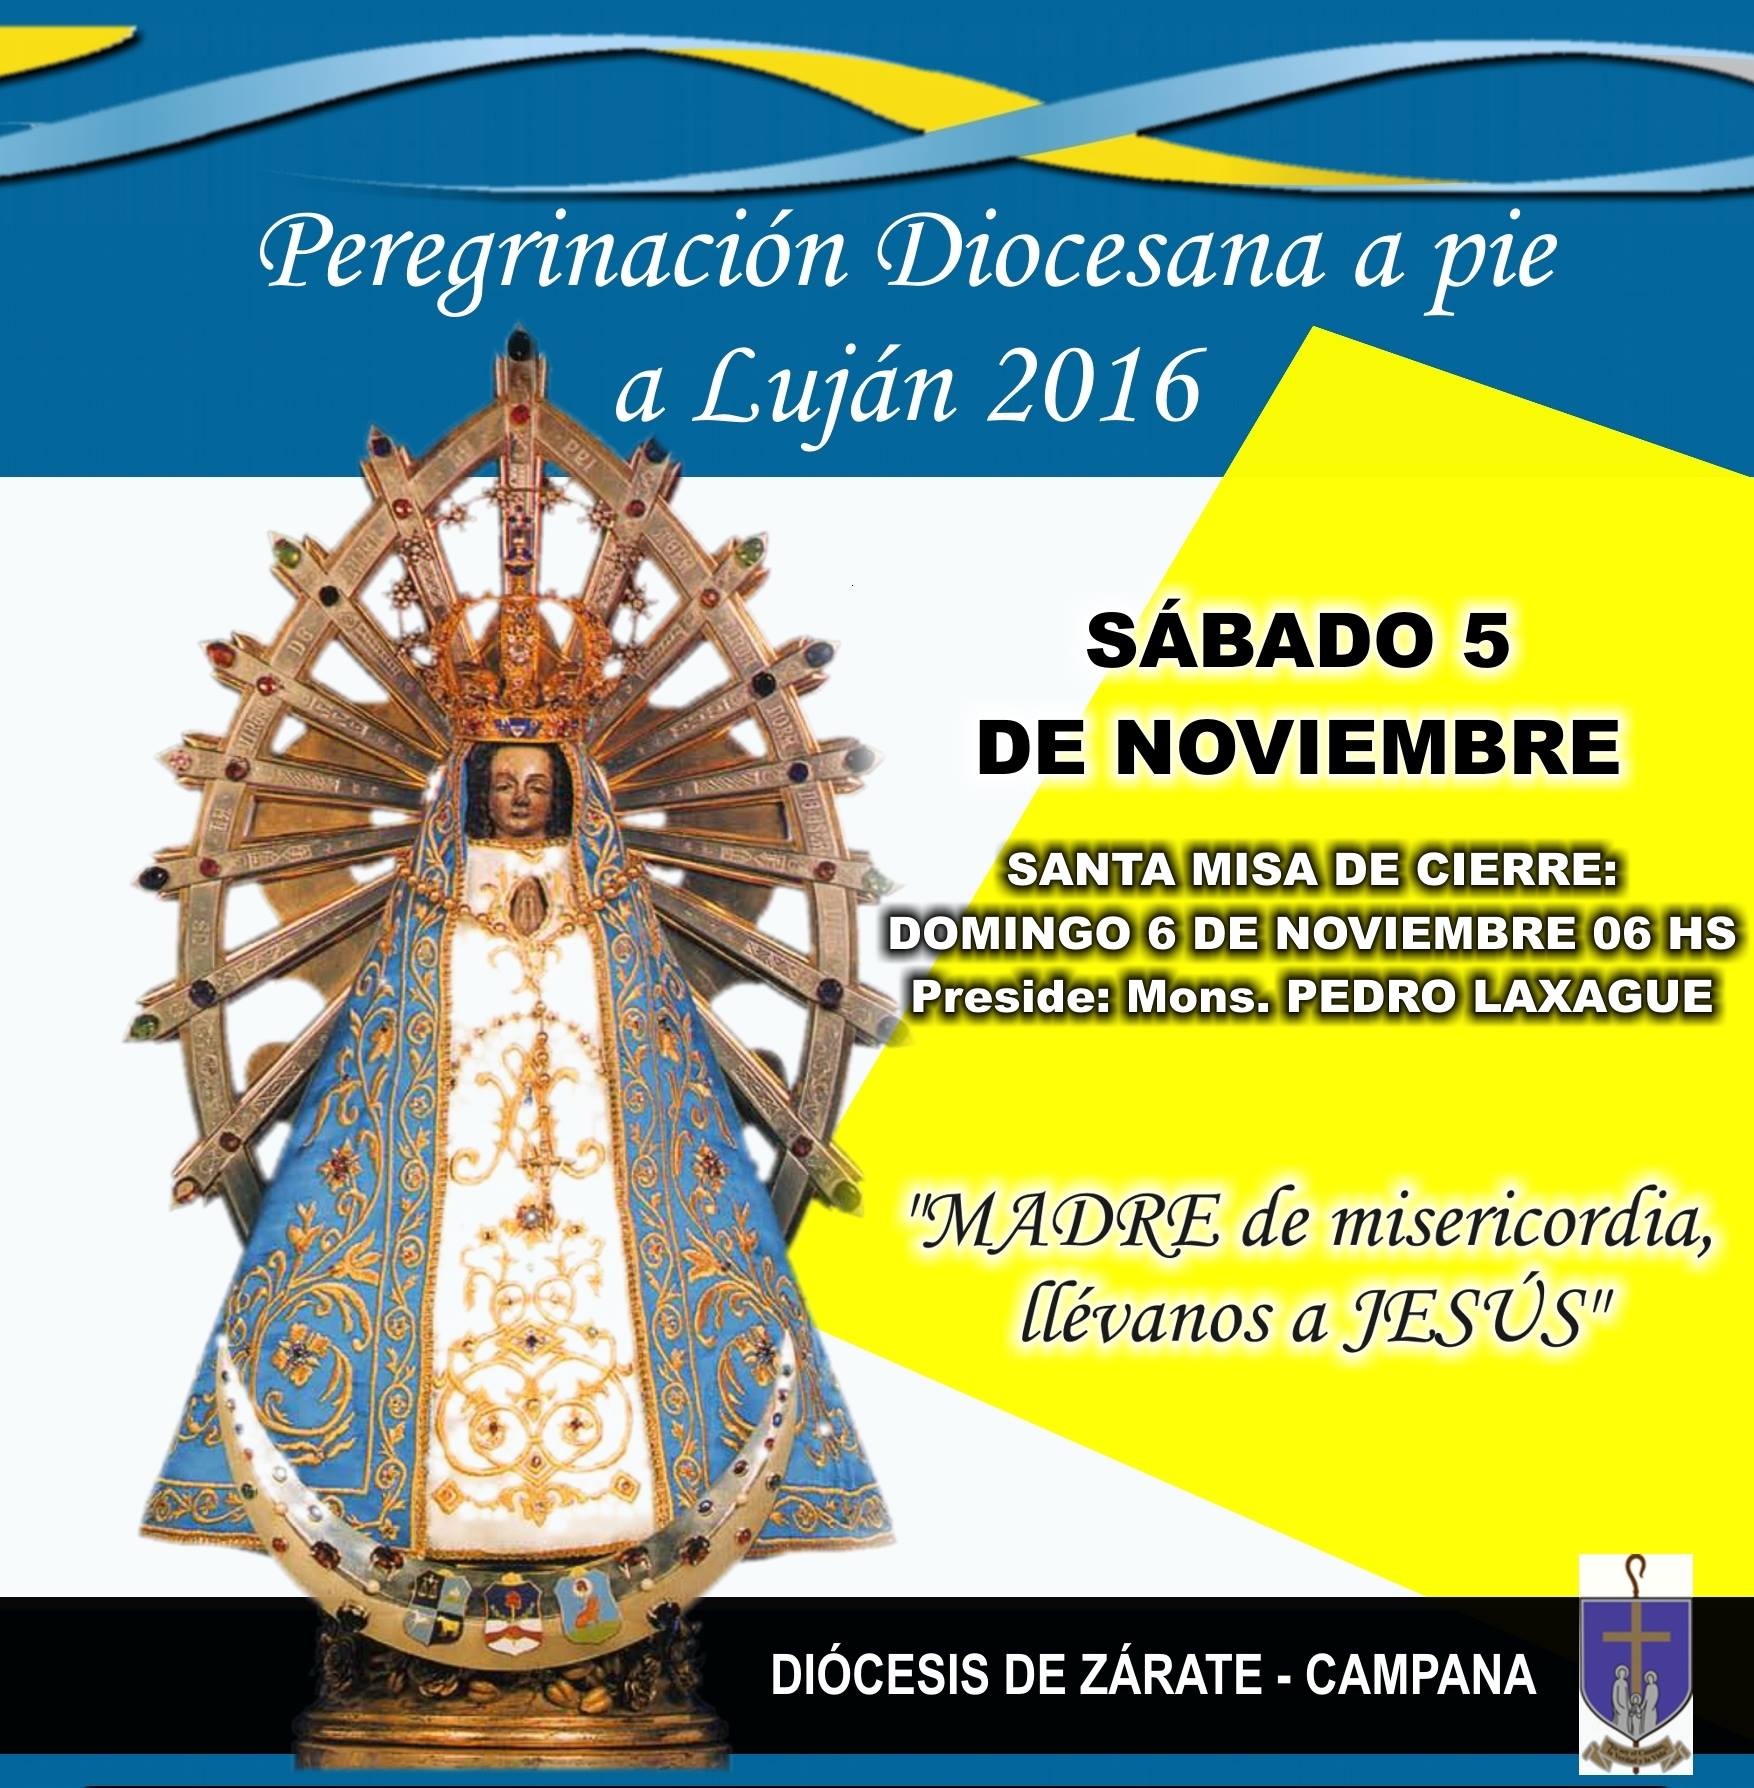 Sábado 5 de noviembre: Peregrinación Diocesana a pie a Luján 2016